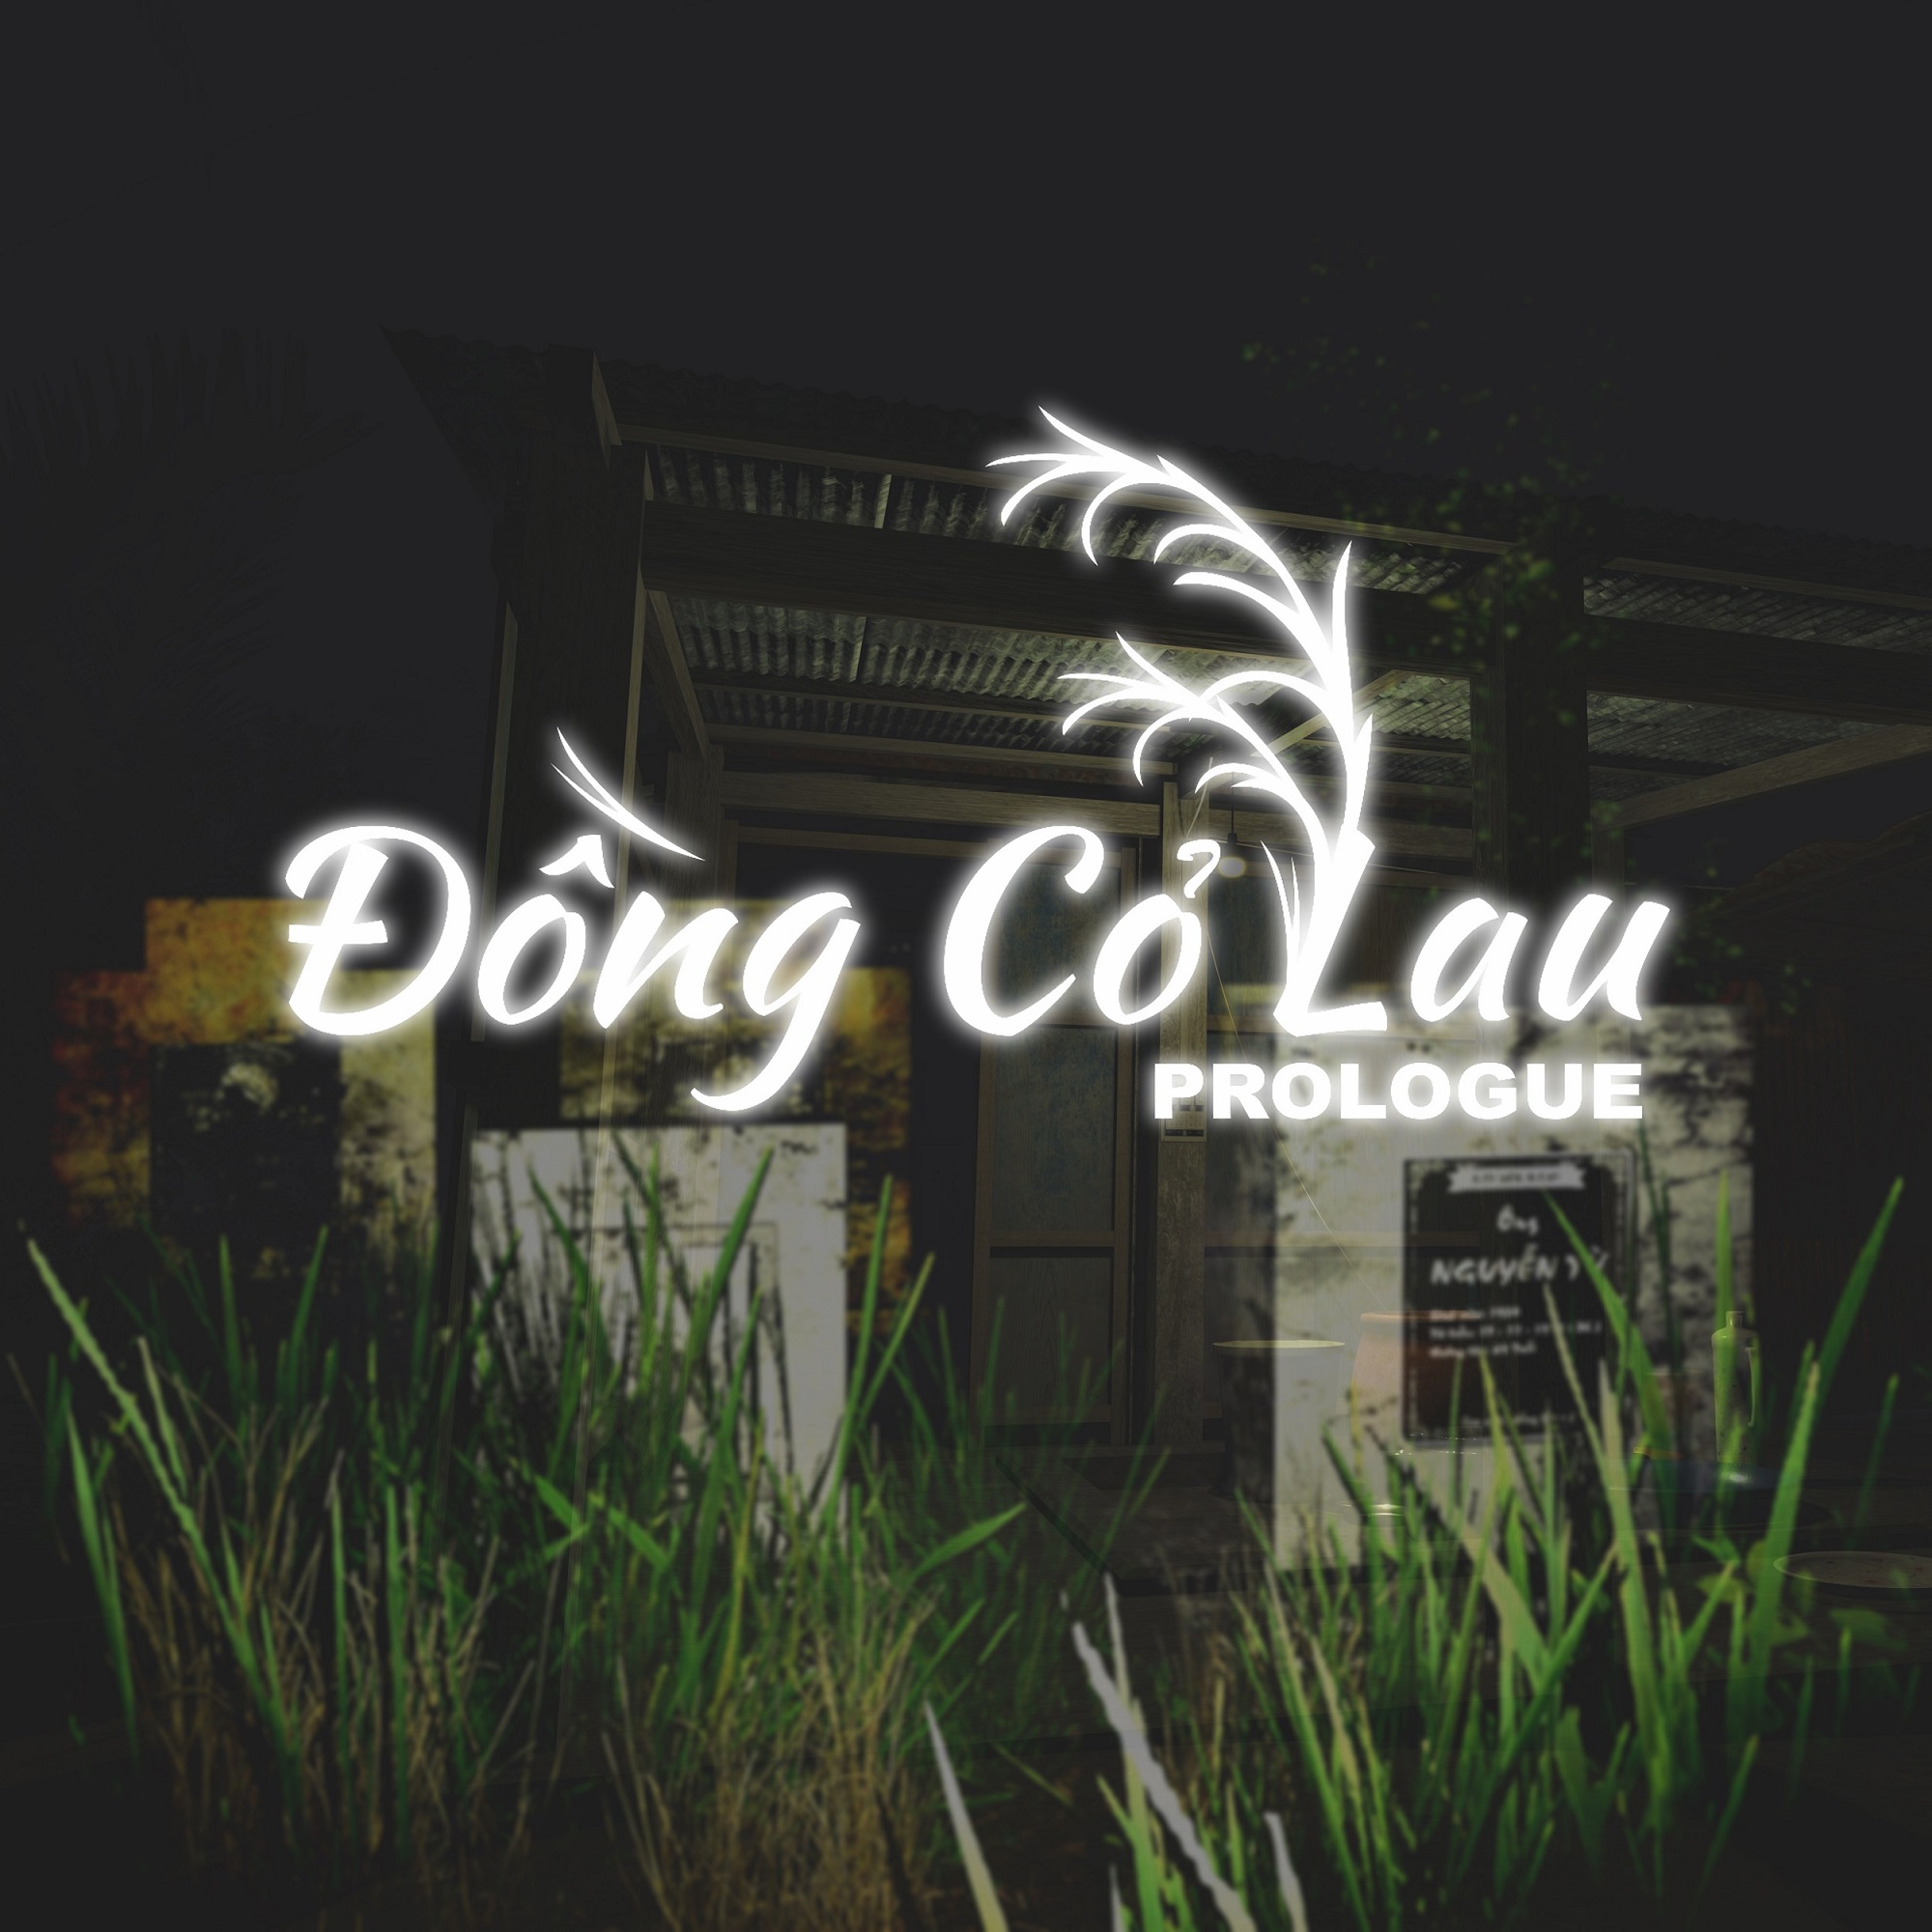 Đồng Cỏ Lau ( Official Prologue )